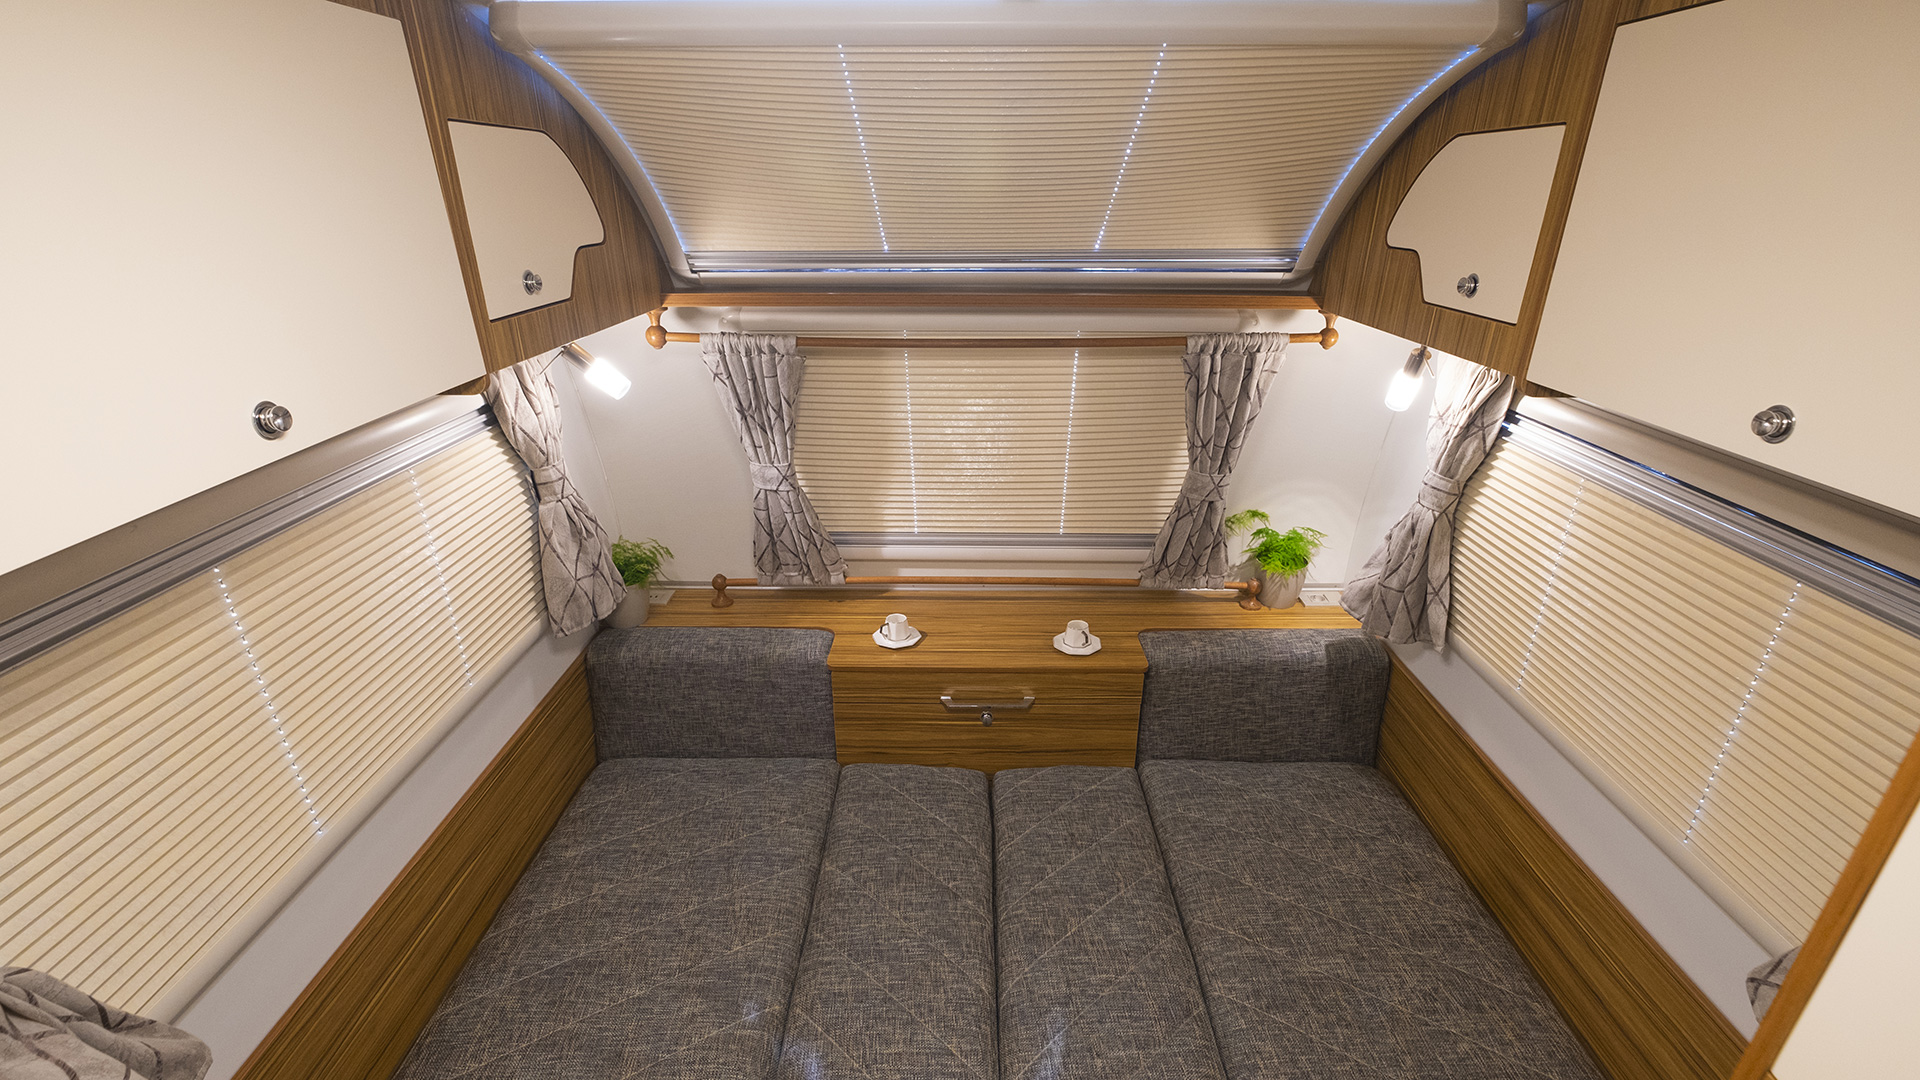 Swan Caravan Safir Model Interior Design